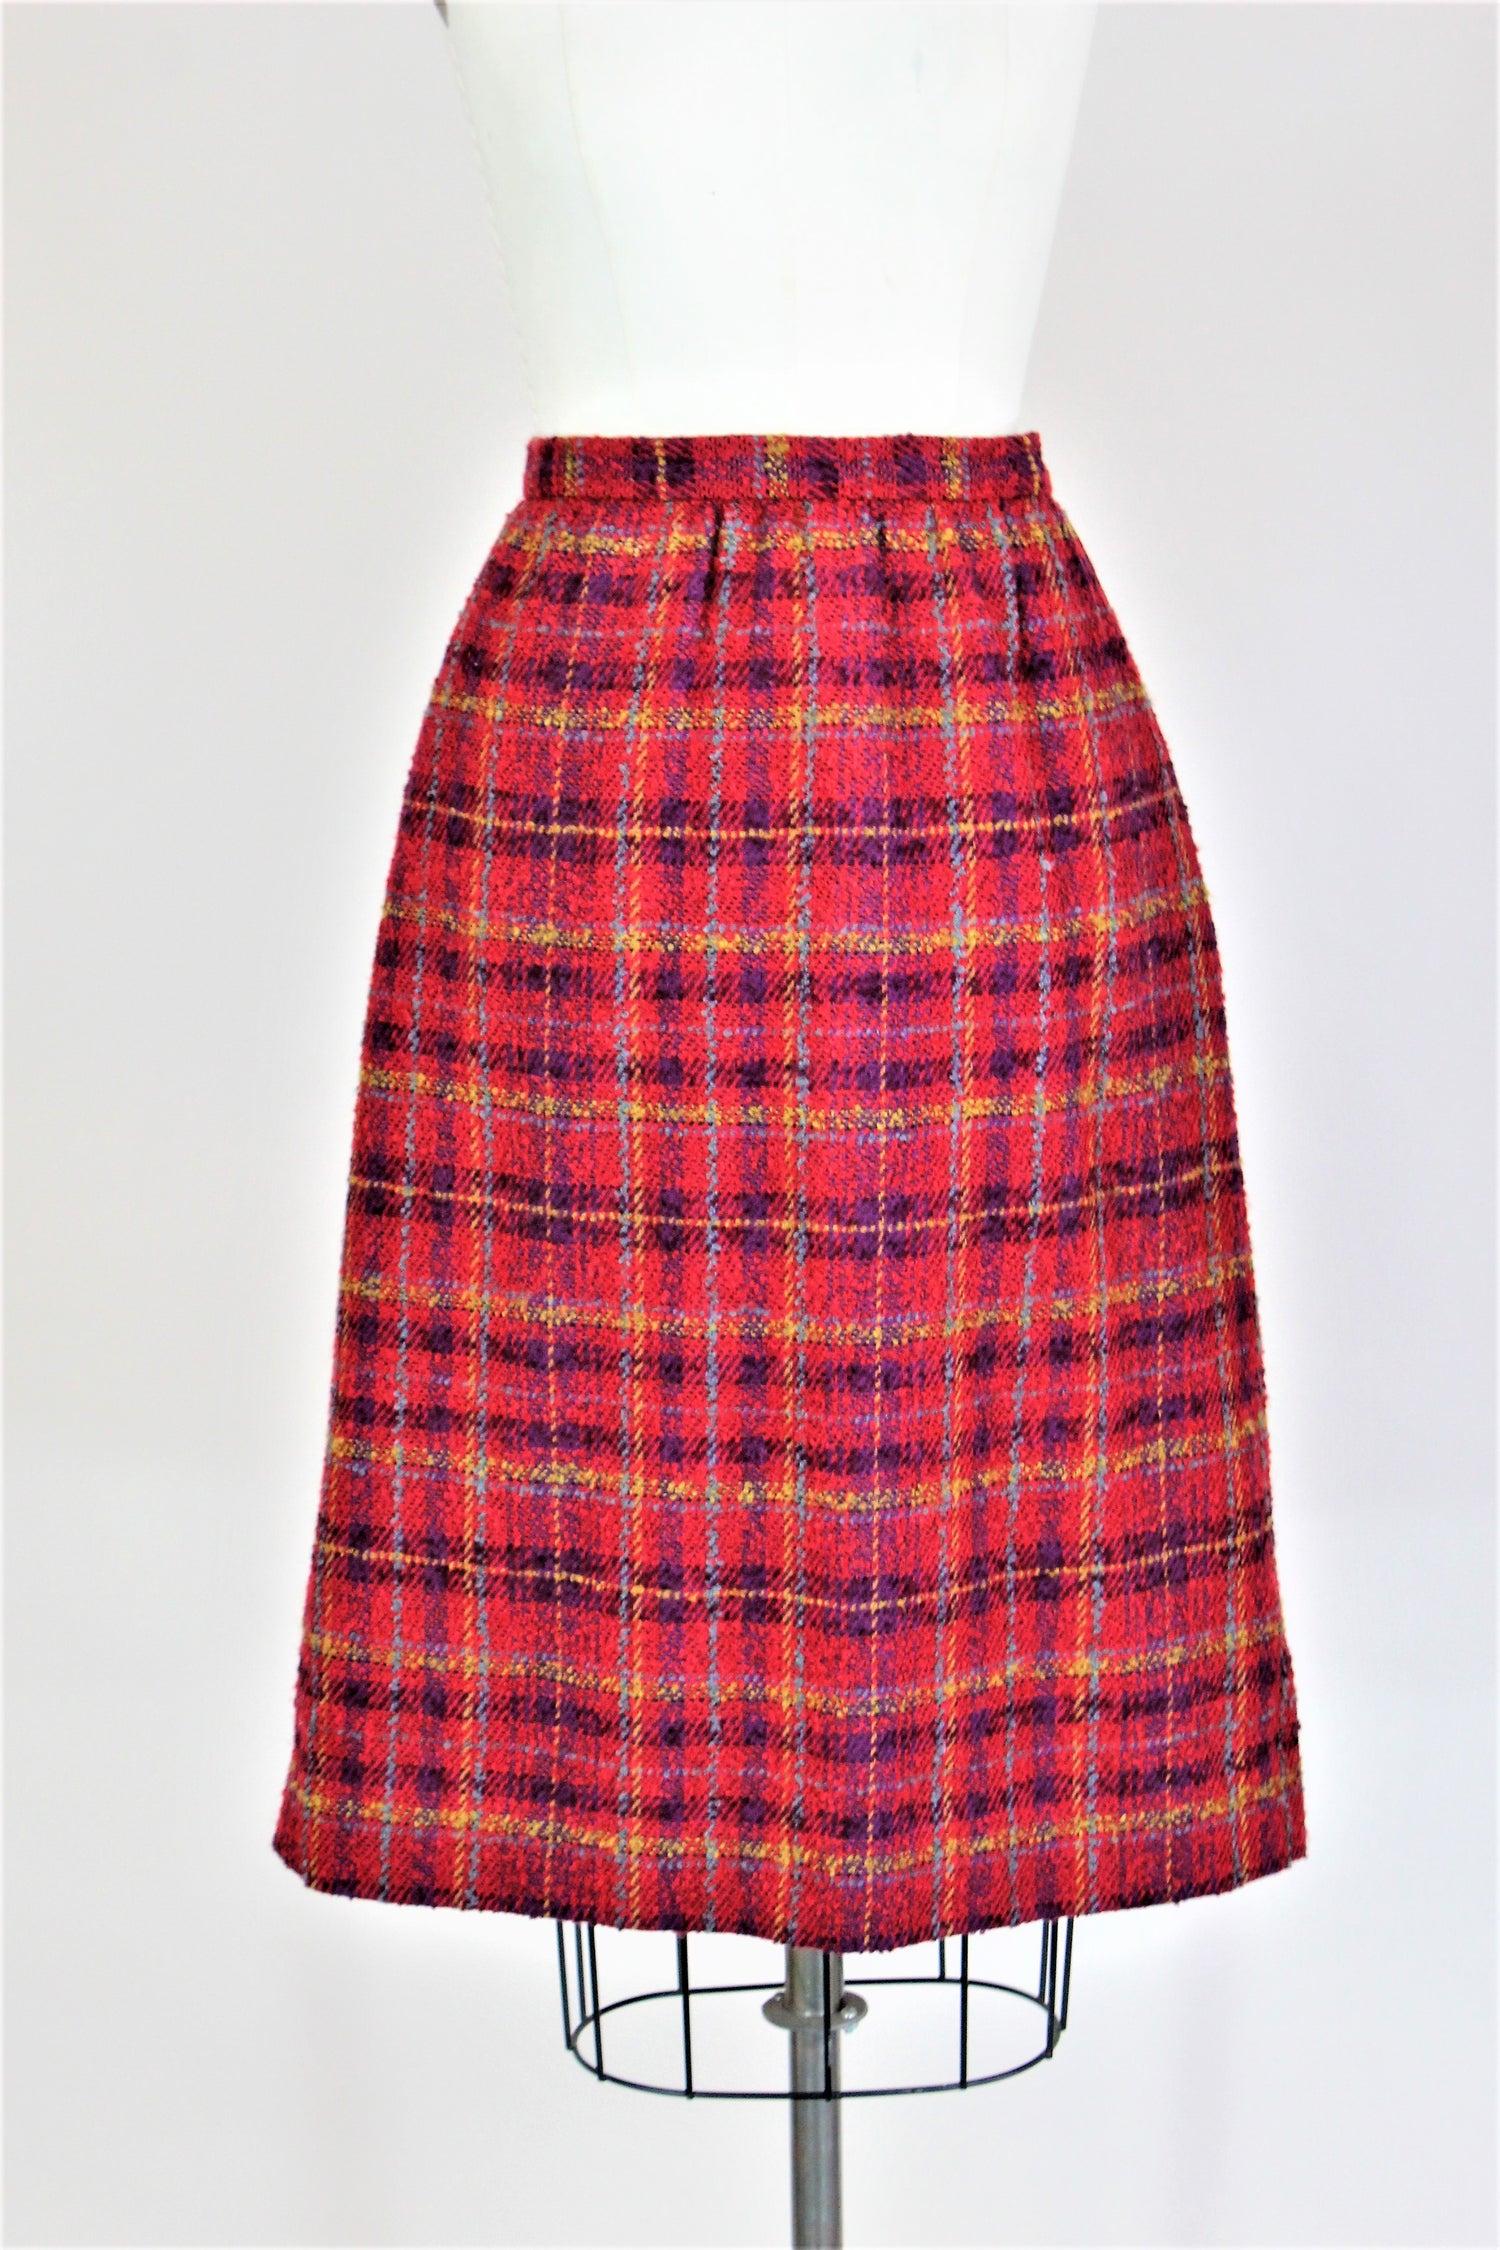 Vintage 1970s 1980s Weathervane Plaid Wool Winter Skirt